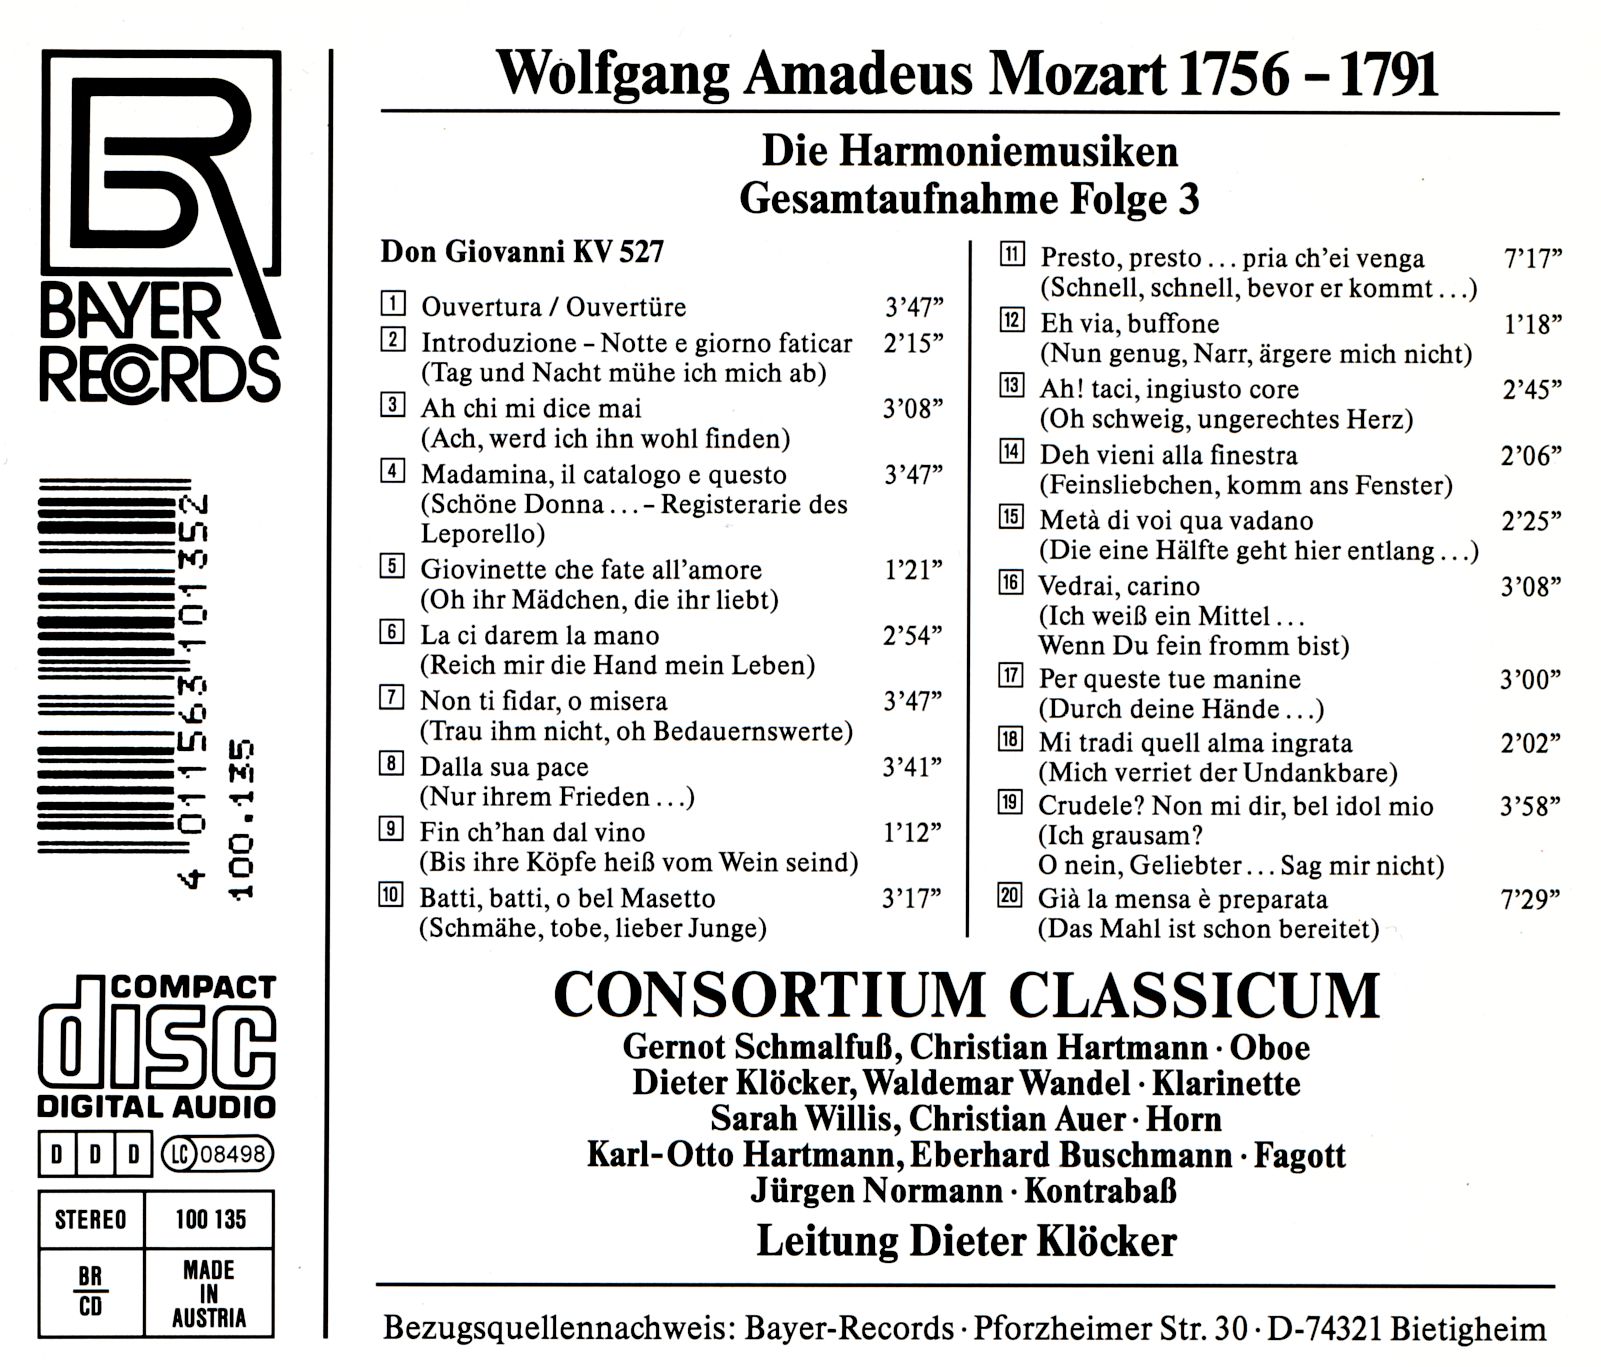 Wolfgang Amadeus Mozart - Harmoniemusiken Folge 3